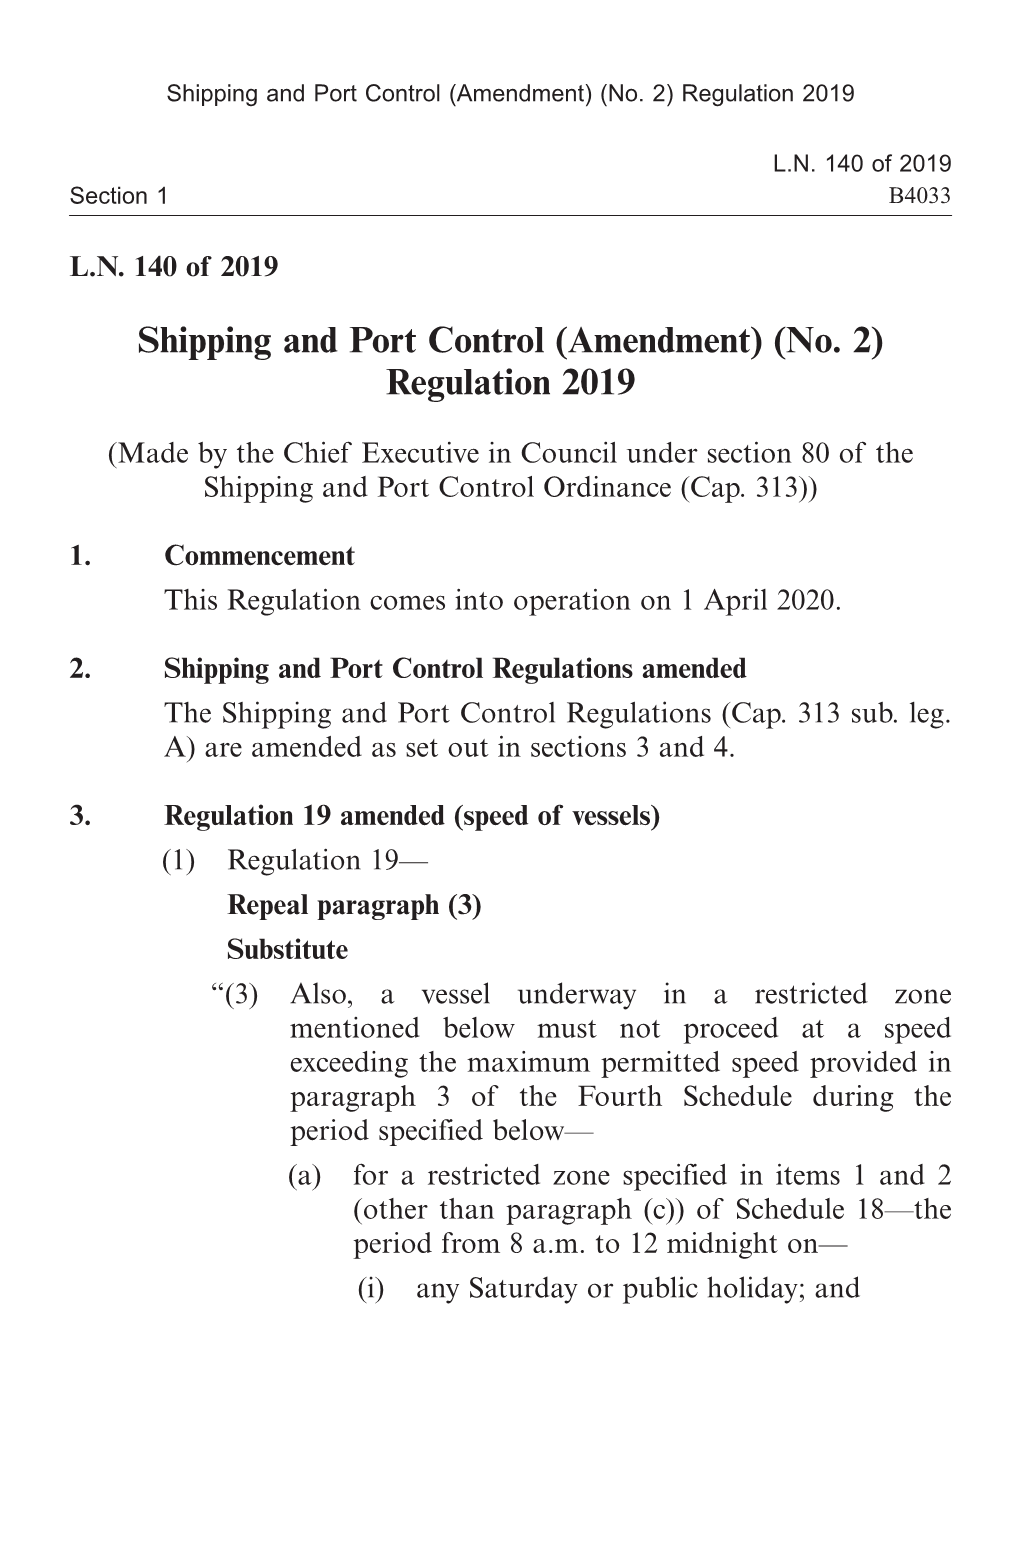 (Amendment) (No. 2) Regulation 2019